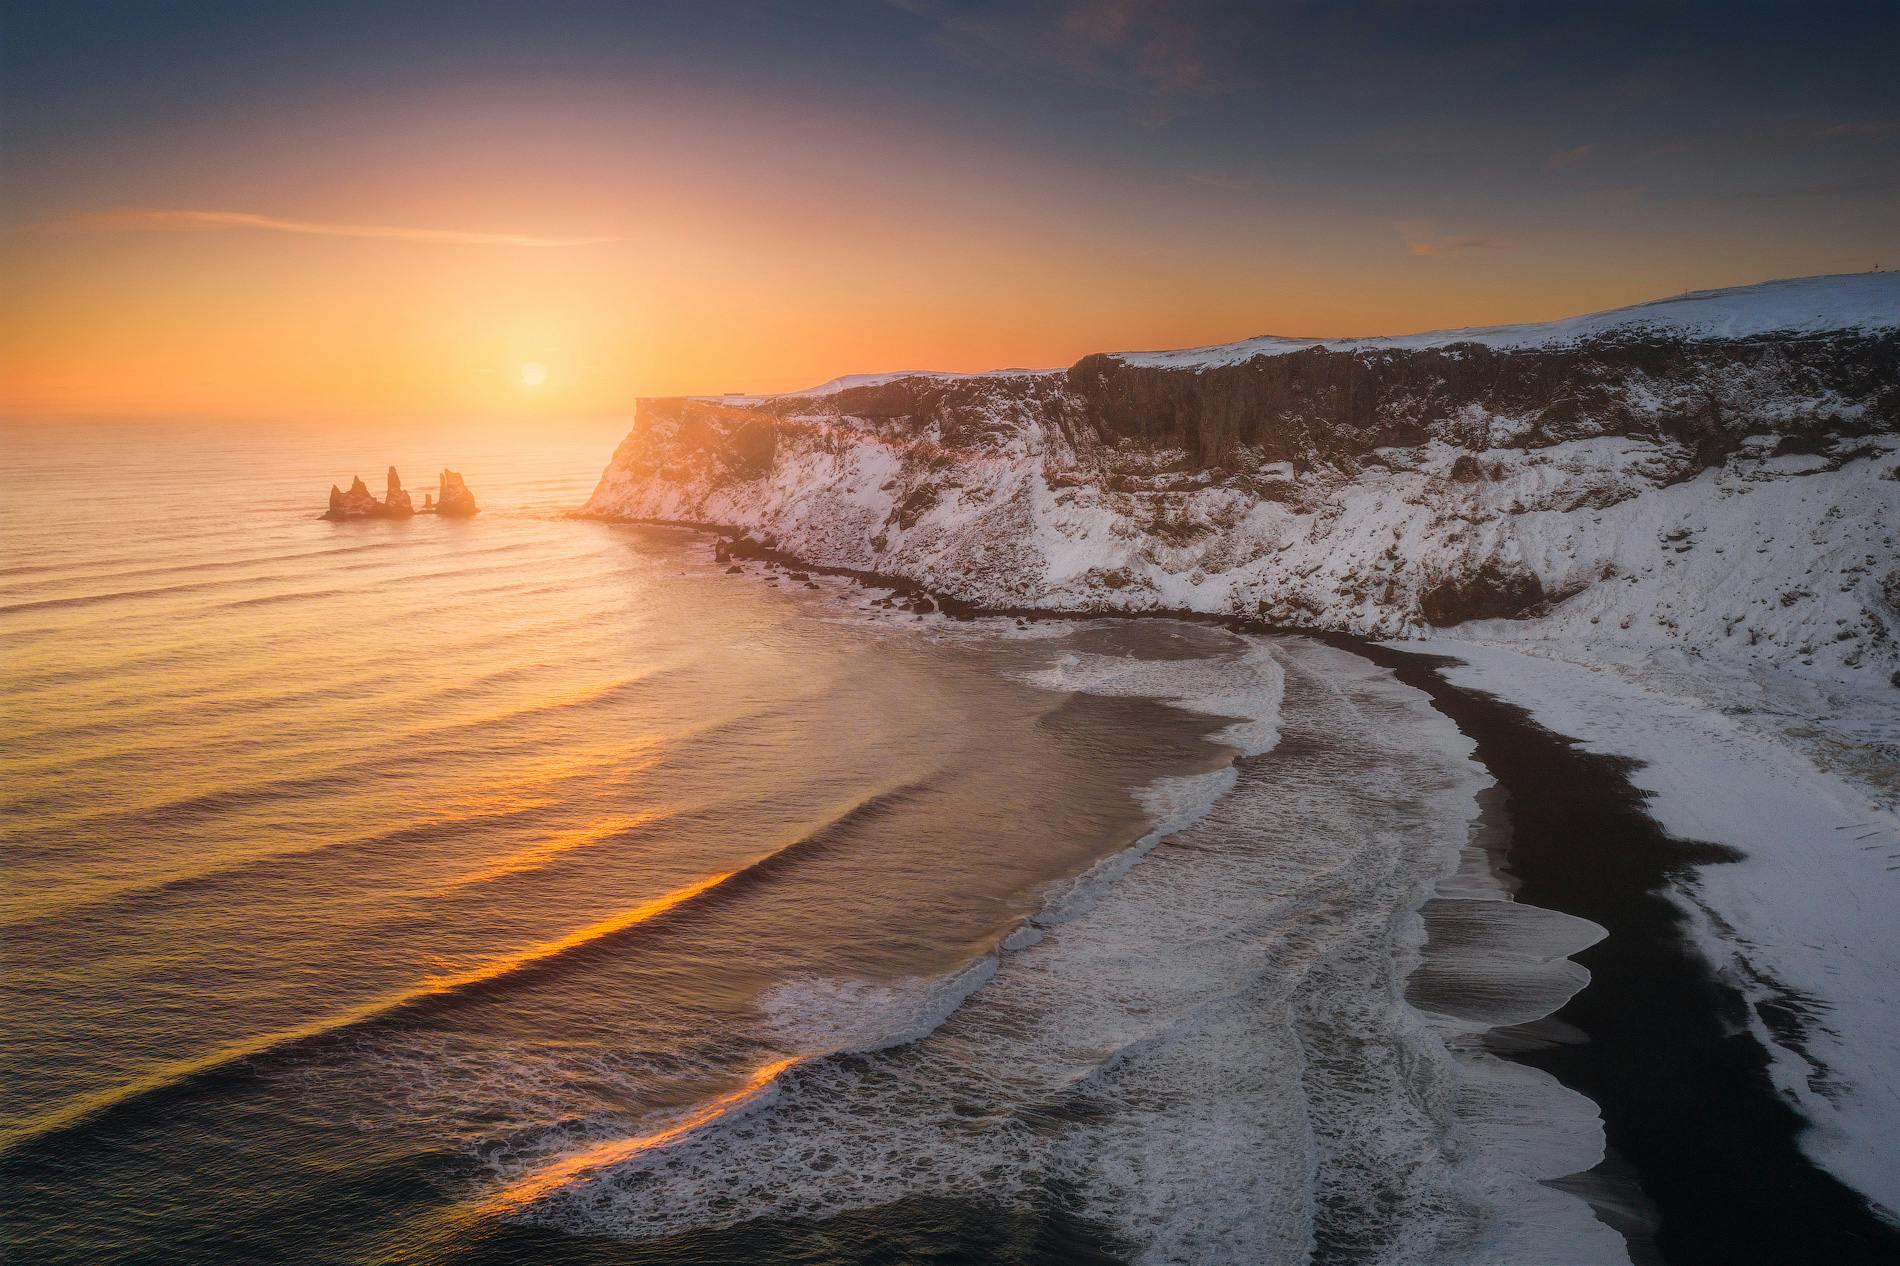 11 Day Northern Lights Photo Workshop around Iceland - day 2